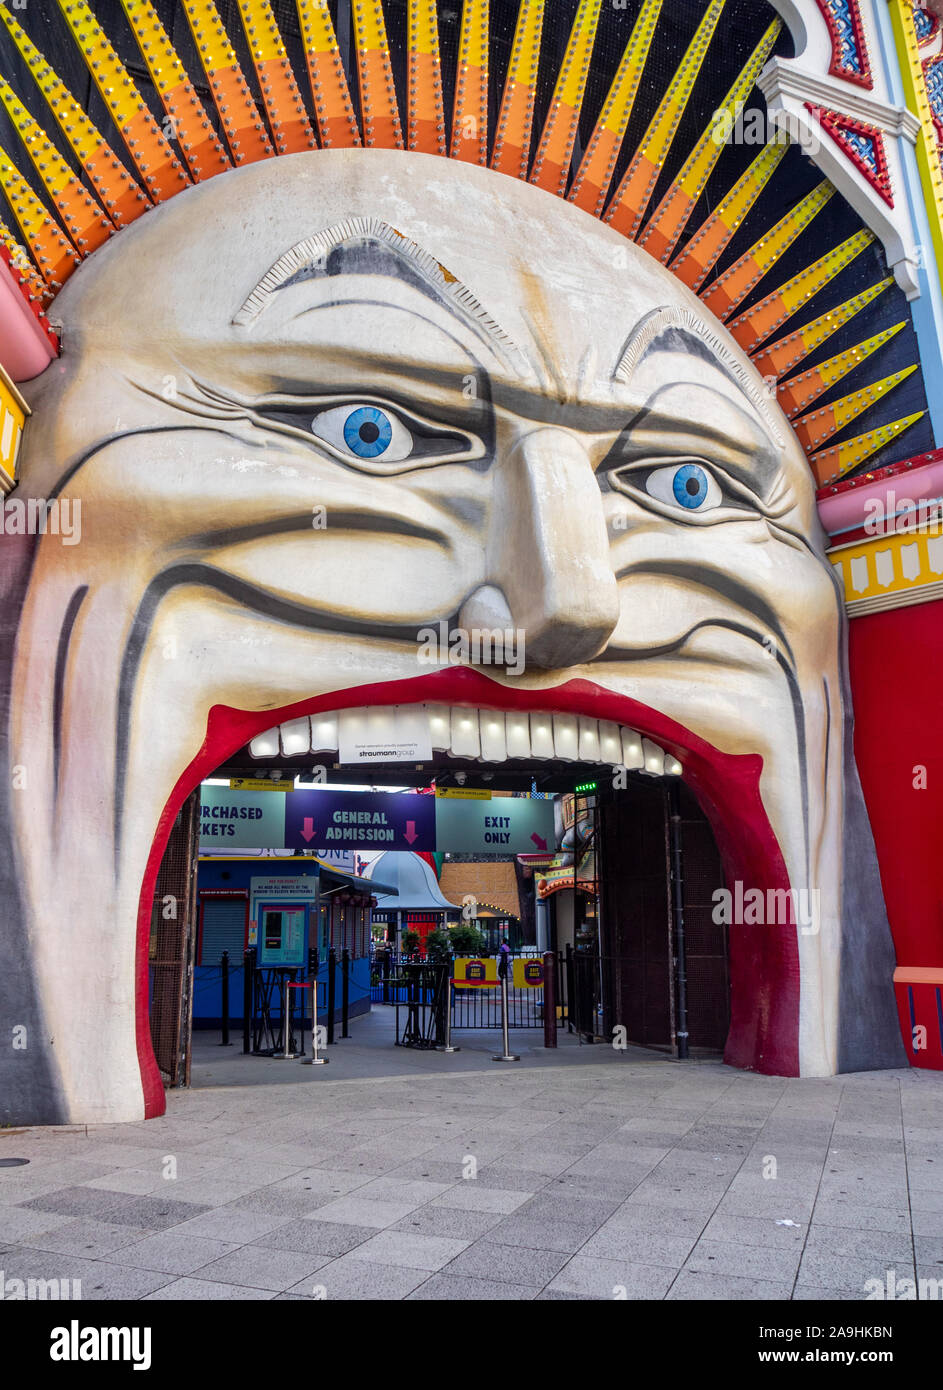 Señor icónica Cara de luna entrada al parque de atracciones Luna Park, recinto ferial de St Kilda Melbourne, Victoria, Australia. Foto de stock